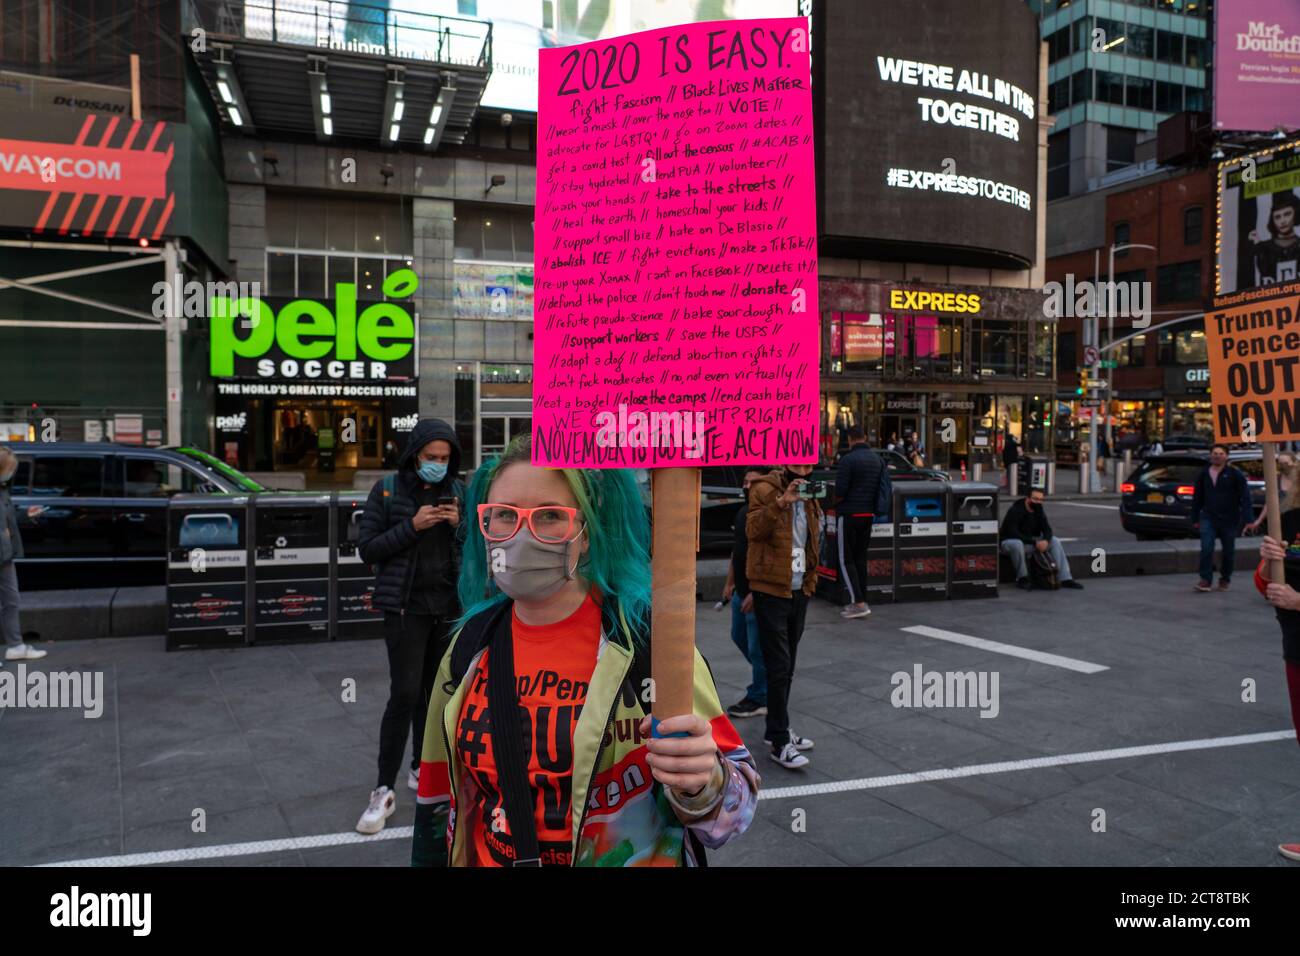 NEW YORK, NY - 21. SEPTEMBER: Ein Protestler hält ein Schild während des RepuseFaschismus-Marsches am Times Square am 21. September 2020 in New York City. Stockfoto